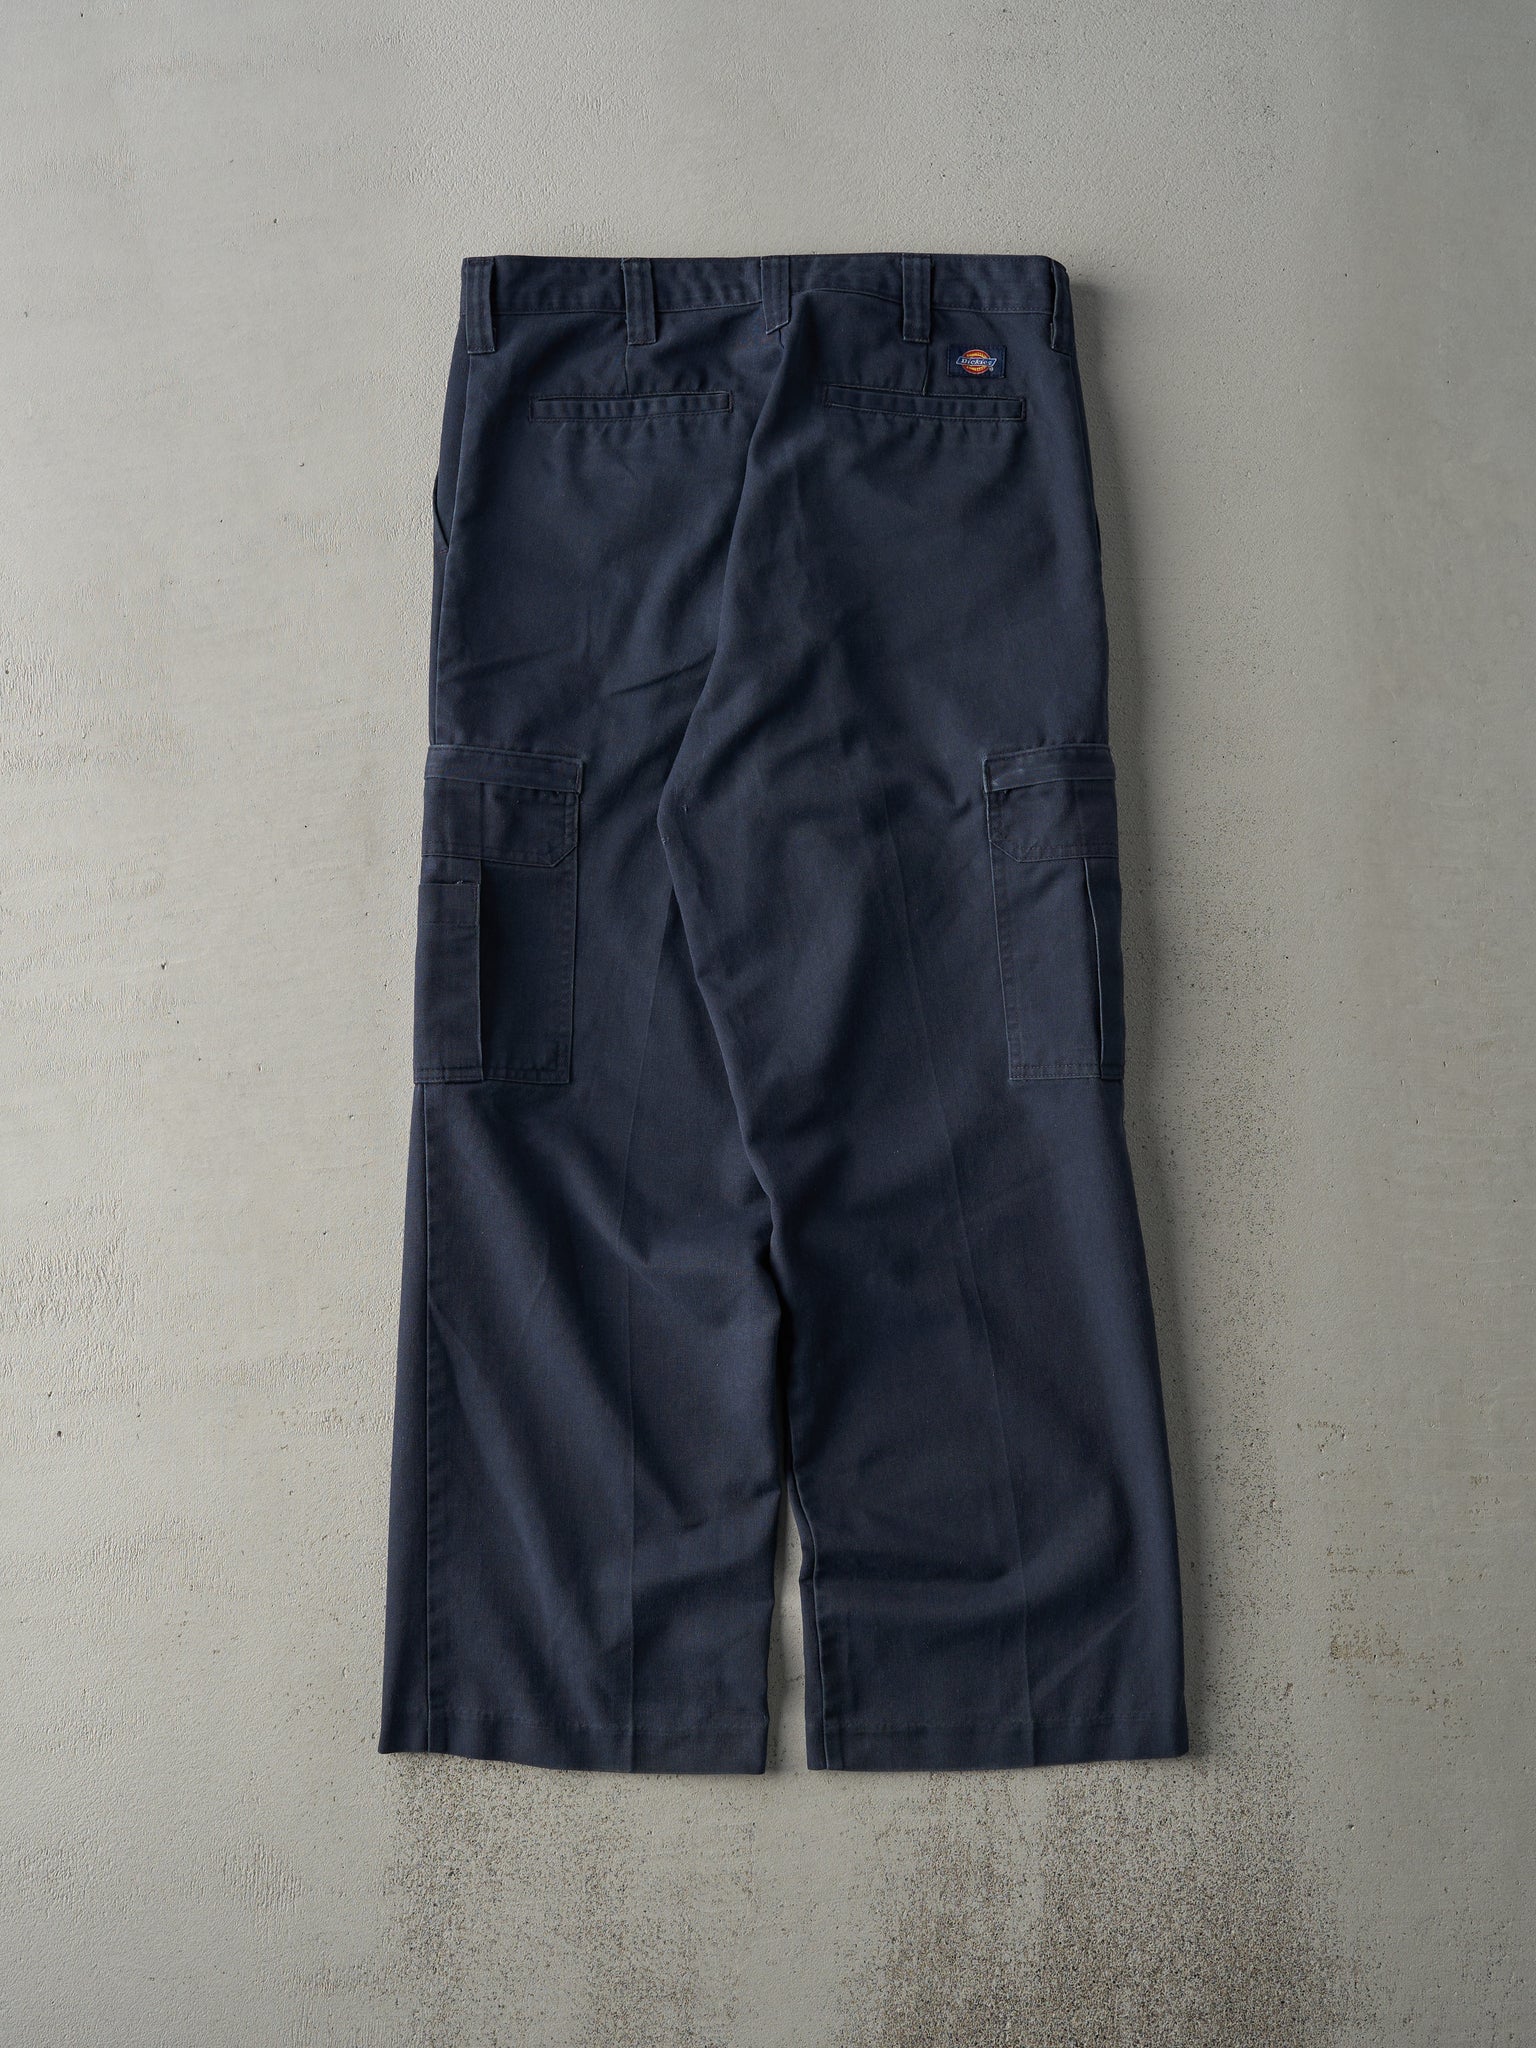 Vintage 90s Faded Navy Dickies Cargo Work Pants (34x29)